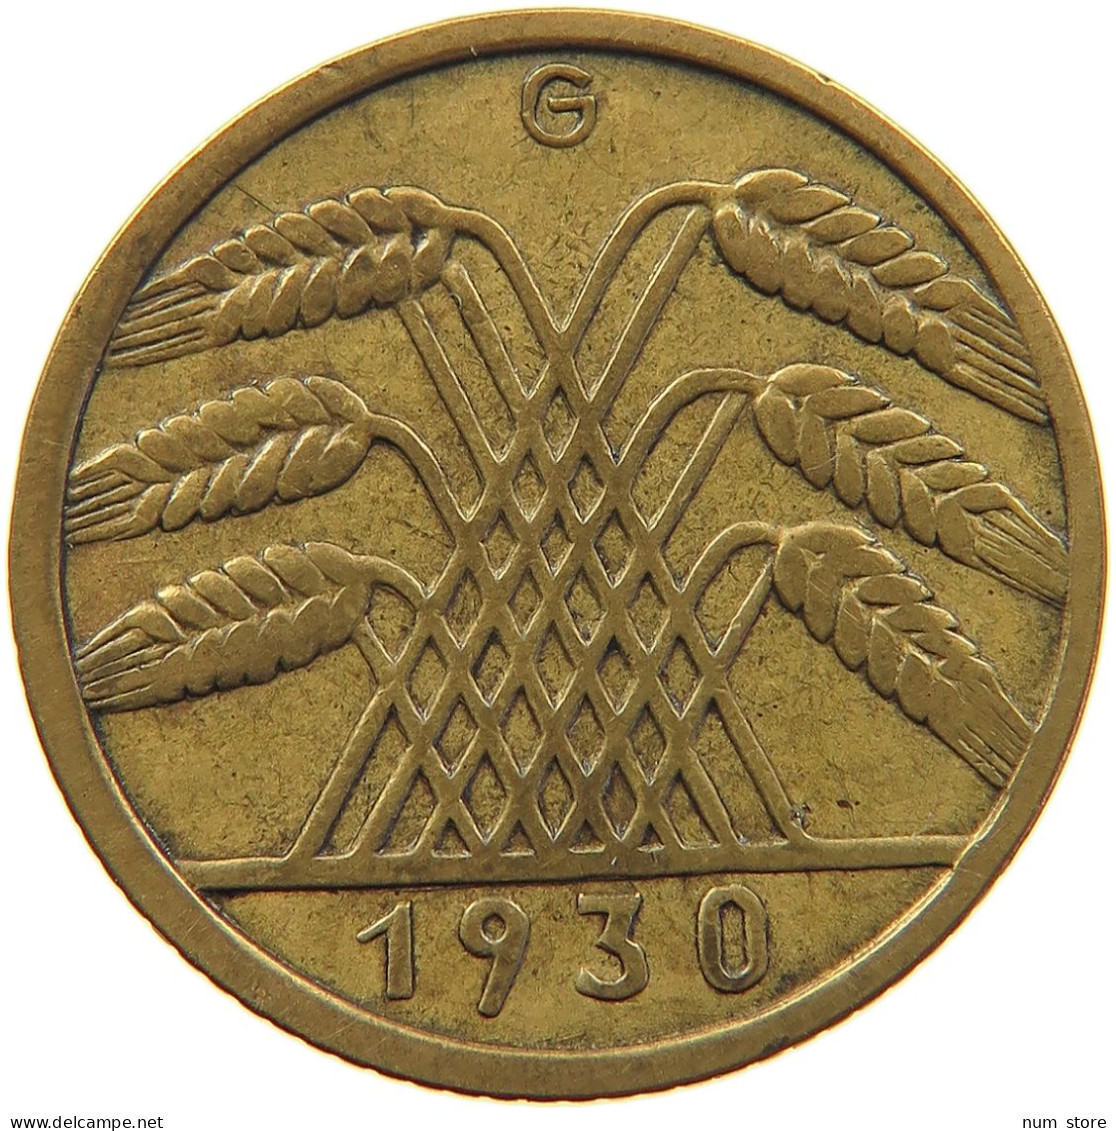 WEIMARER REPUBLIK 10 PFENNIG 1930 G  #MA 098925 - 10 Rentenpfennig & 10 Reichspfennig